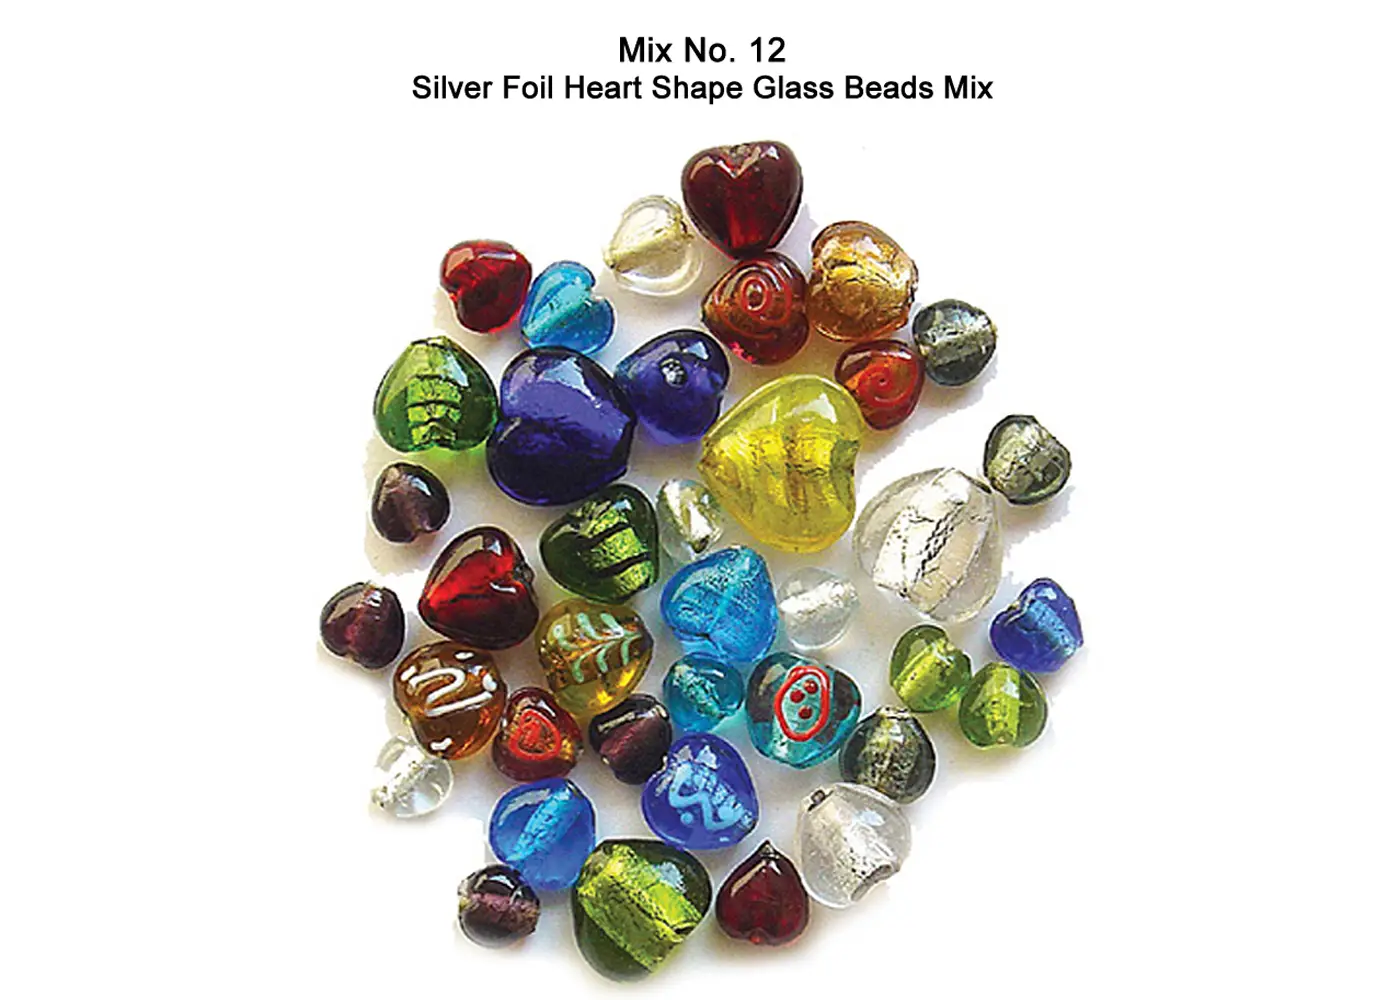 Silver Foil Heart Shape Glass Beads Mix